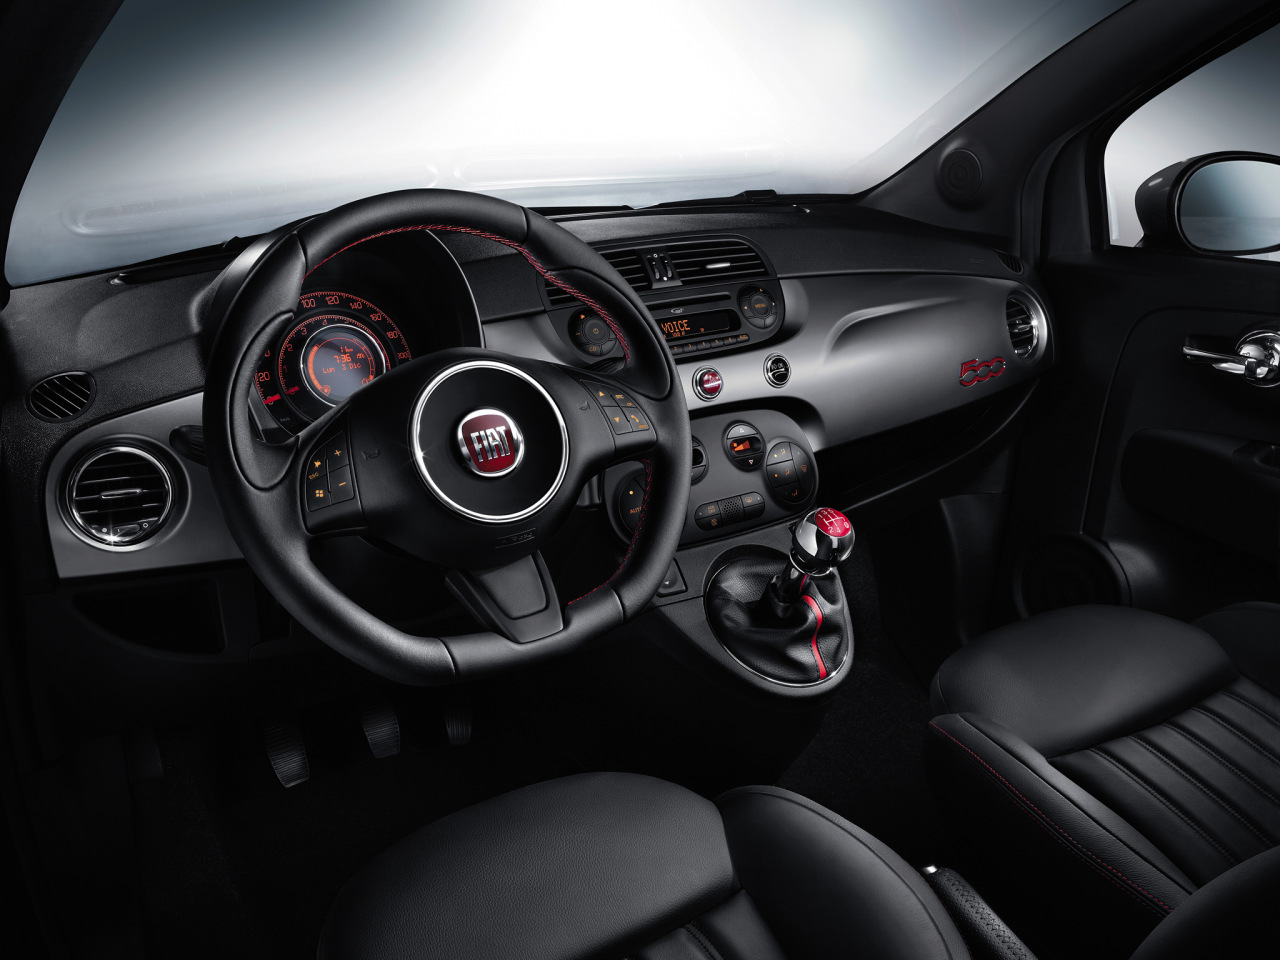 Fiat presenta el nuevo 500S